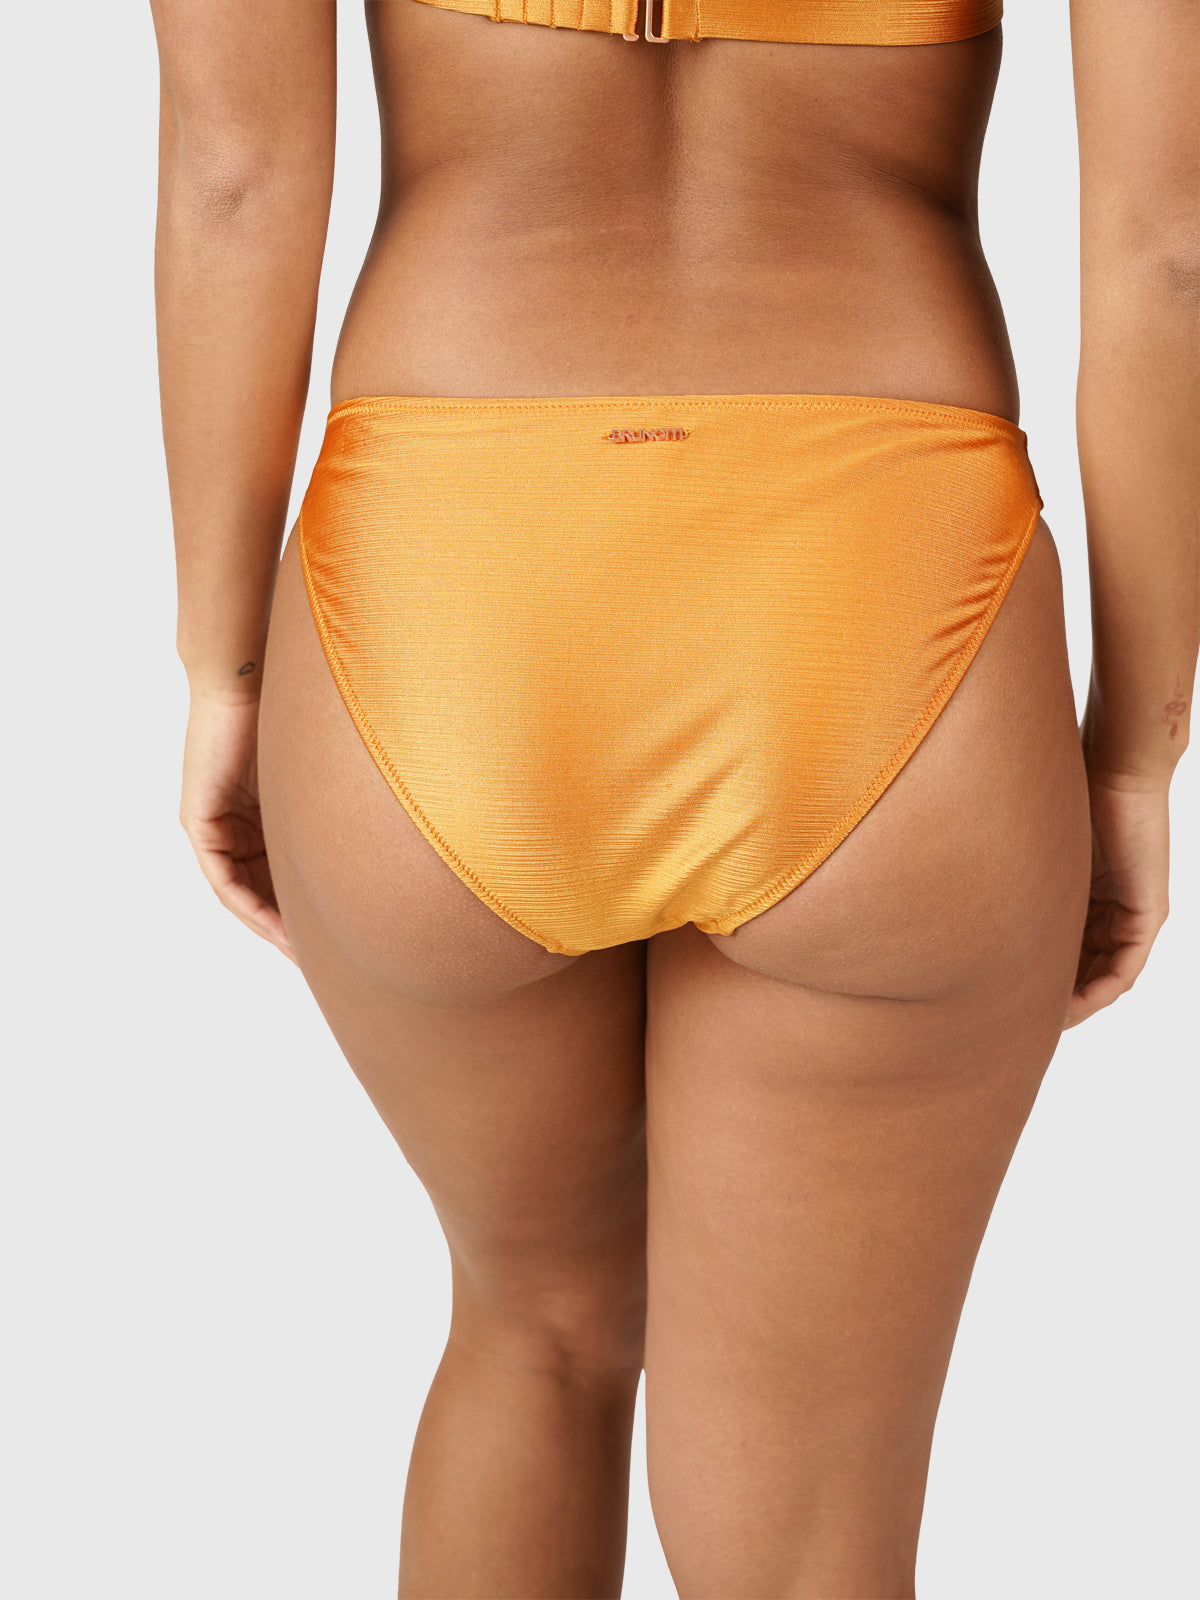 Cyane Women Bralette Bikini Set | Shiny Orange